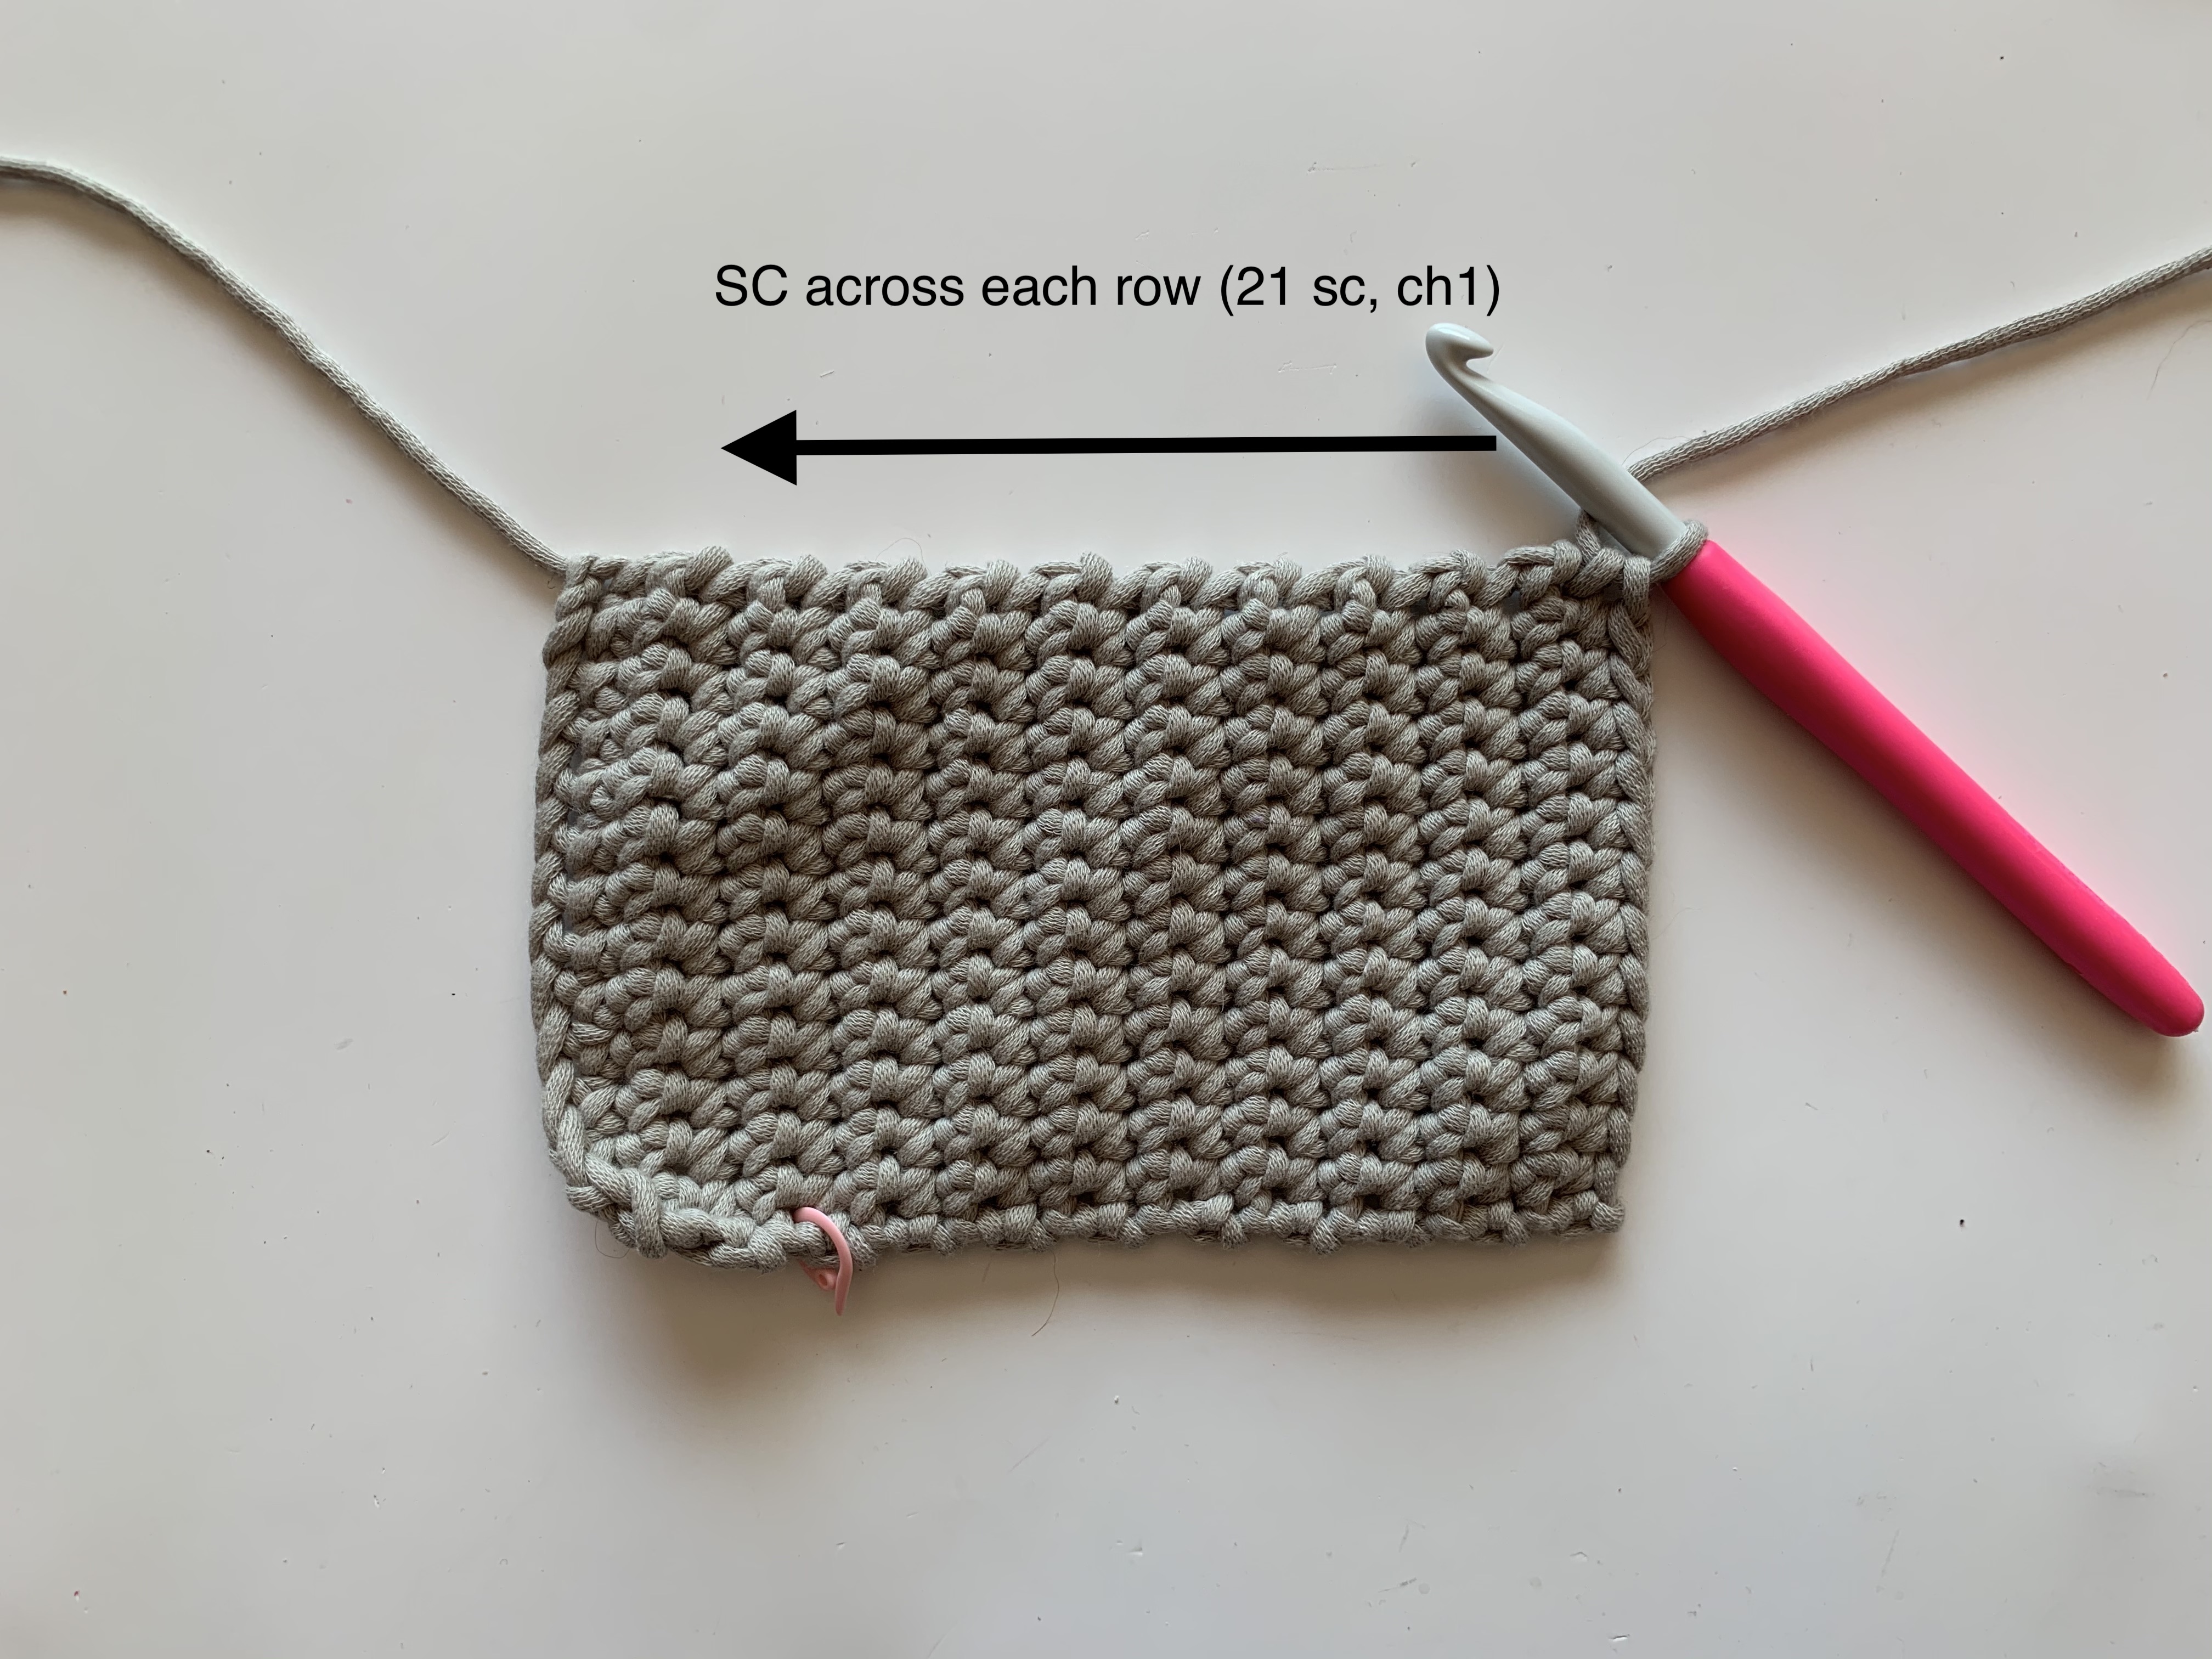 Free Slim Crochet Cozy Pattern – Savlabot